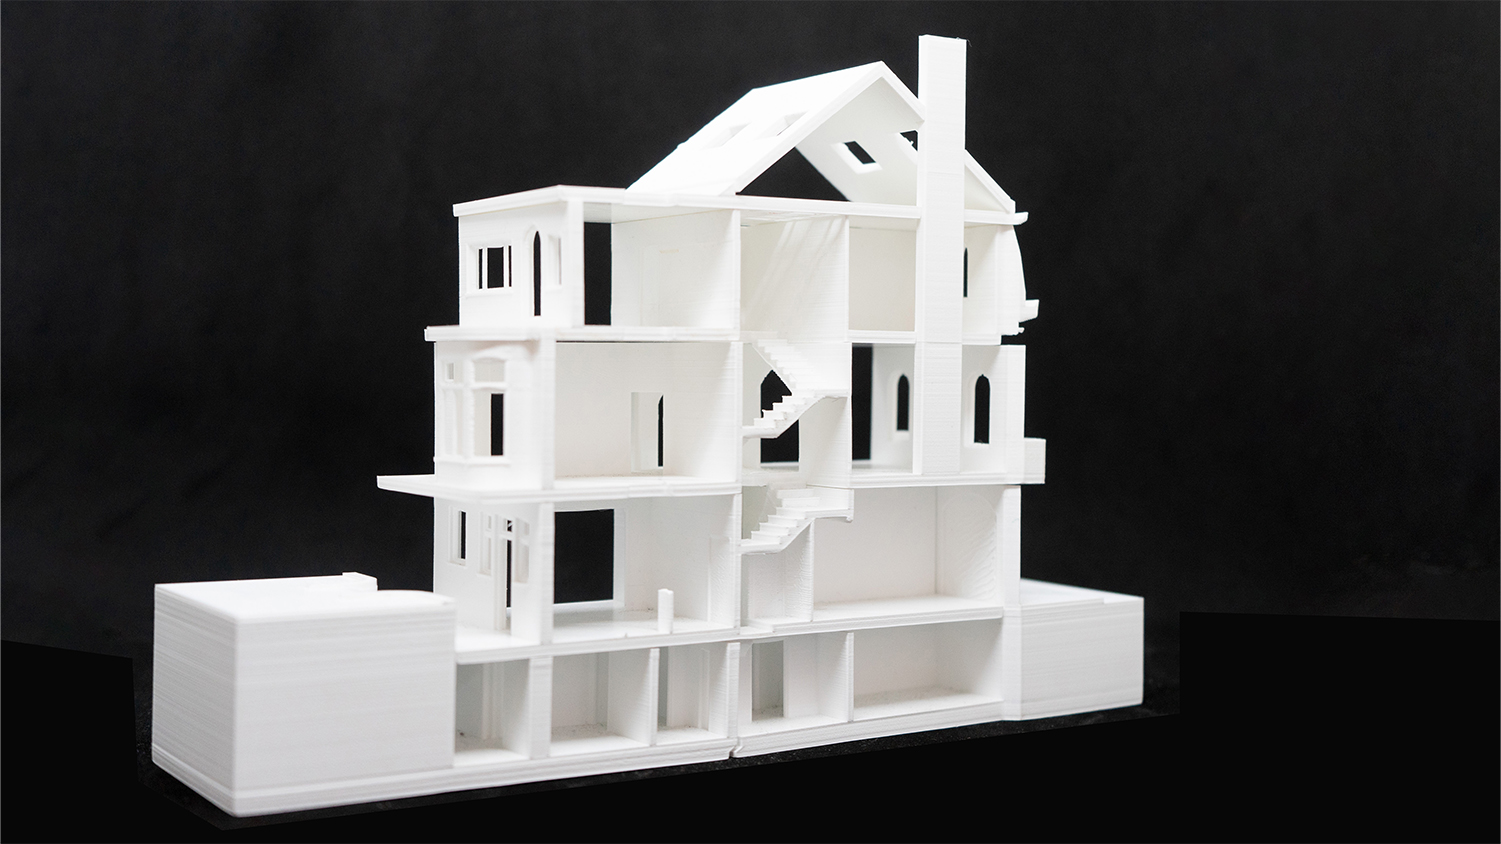 House renovation in Schaerbeek - study model